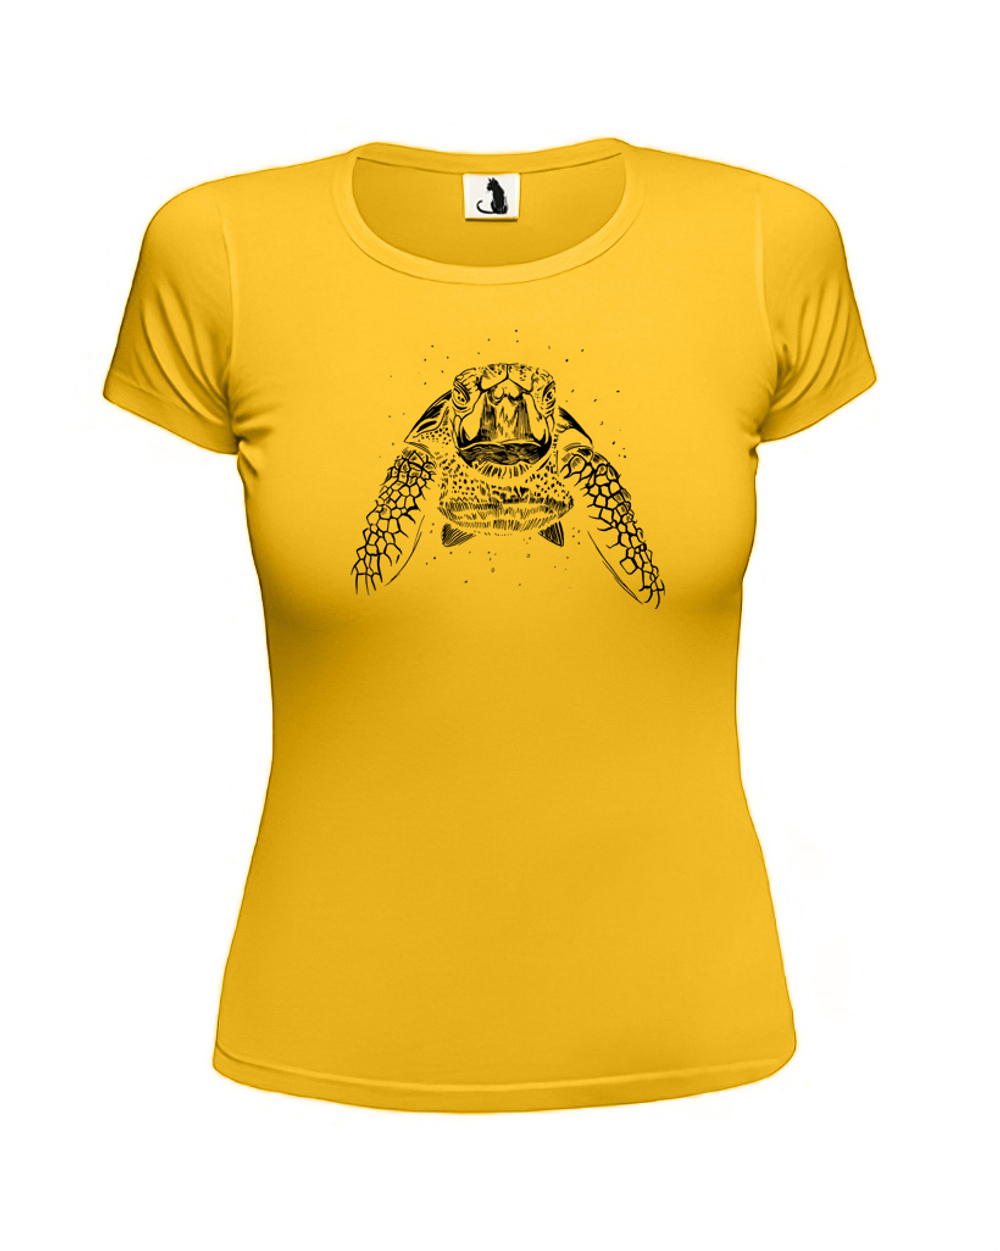 Футболка с черепахой женская приталенная желтая с черным рисунком